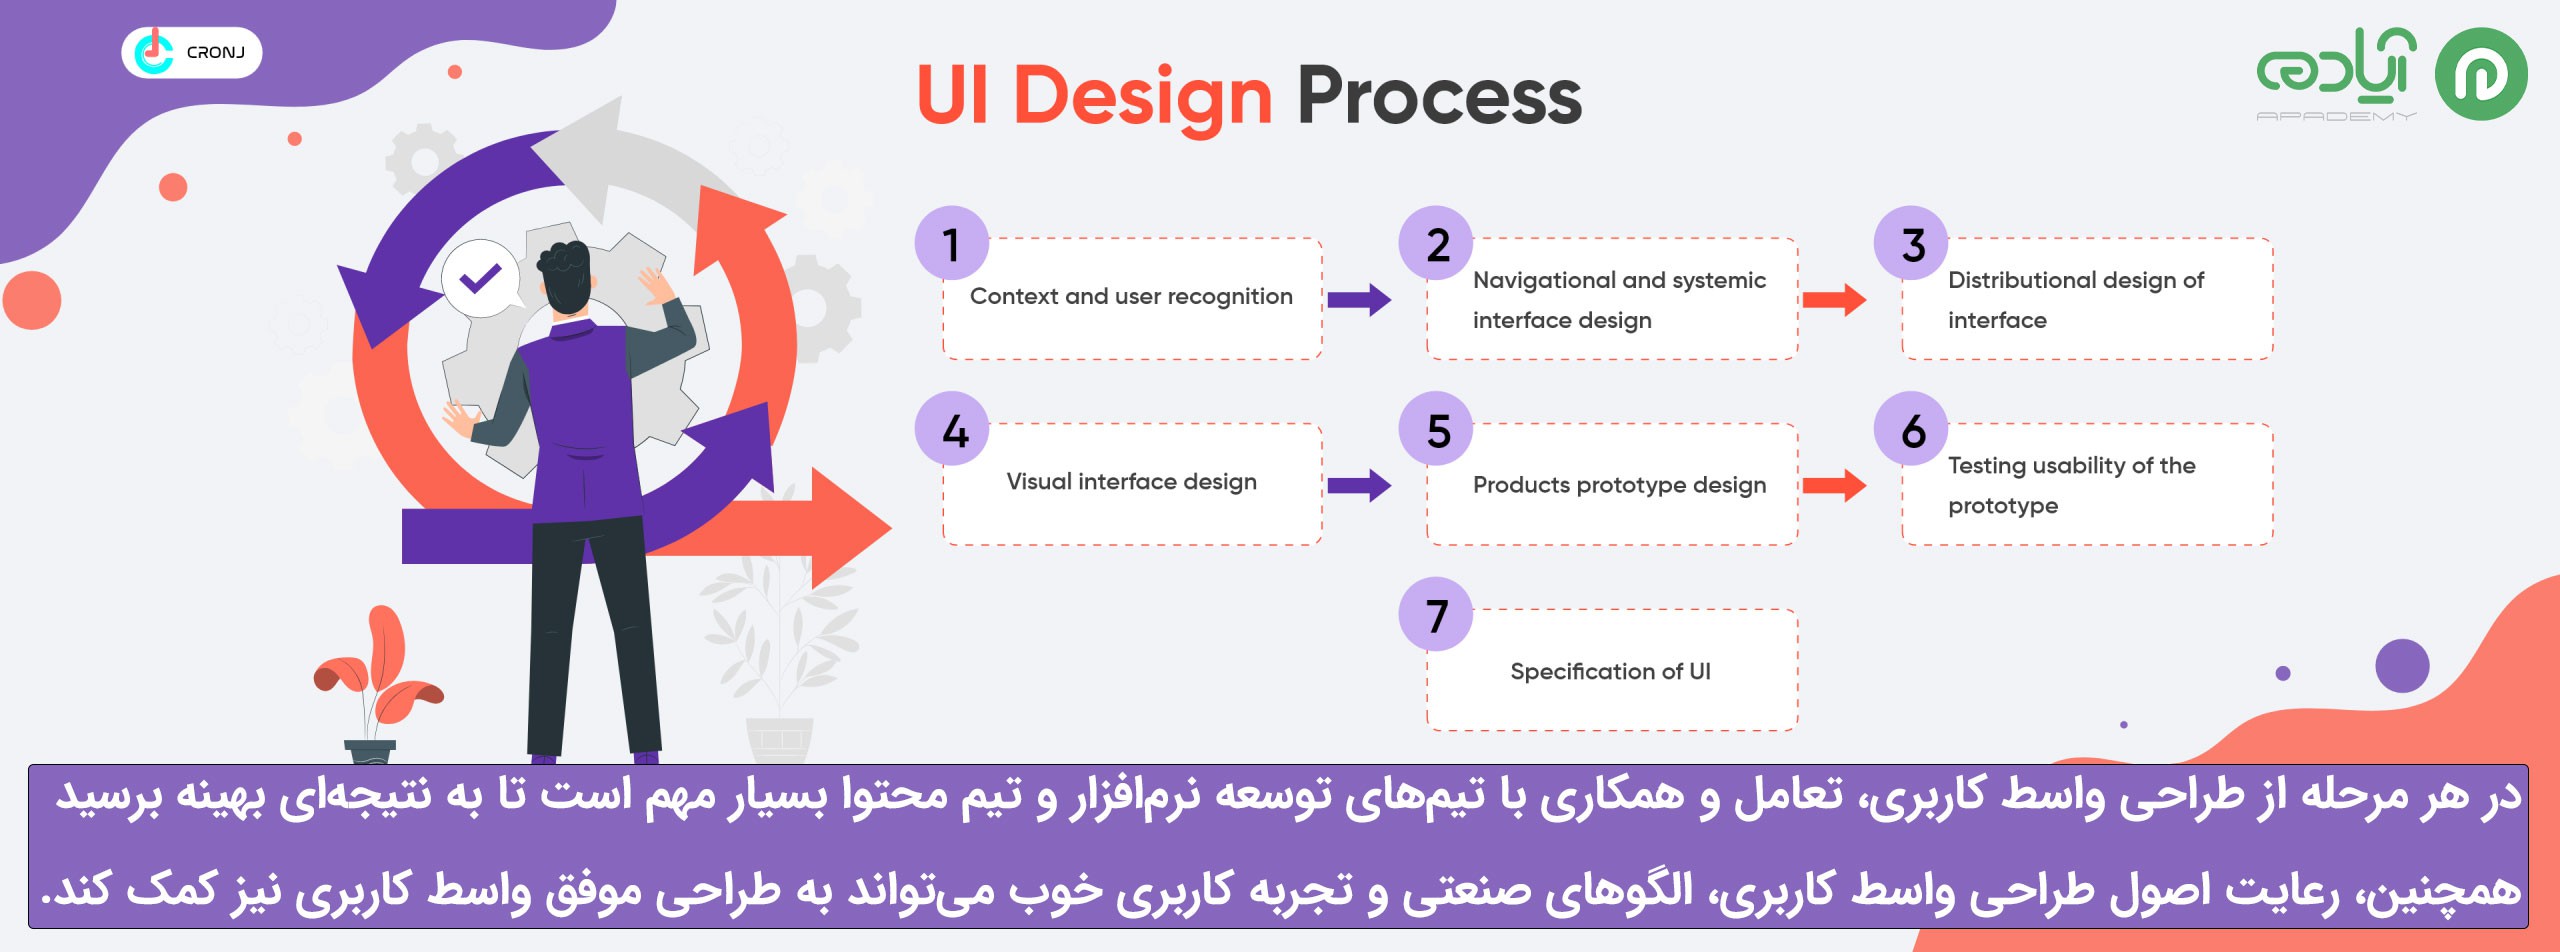 مراحل طراحی رابط کاربری (UI) چیست؟